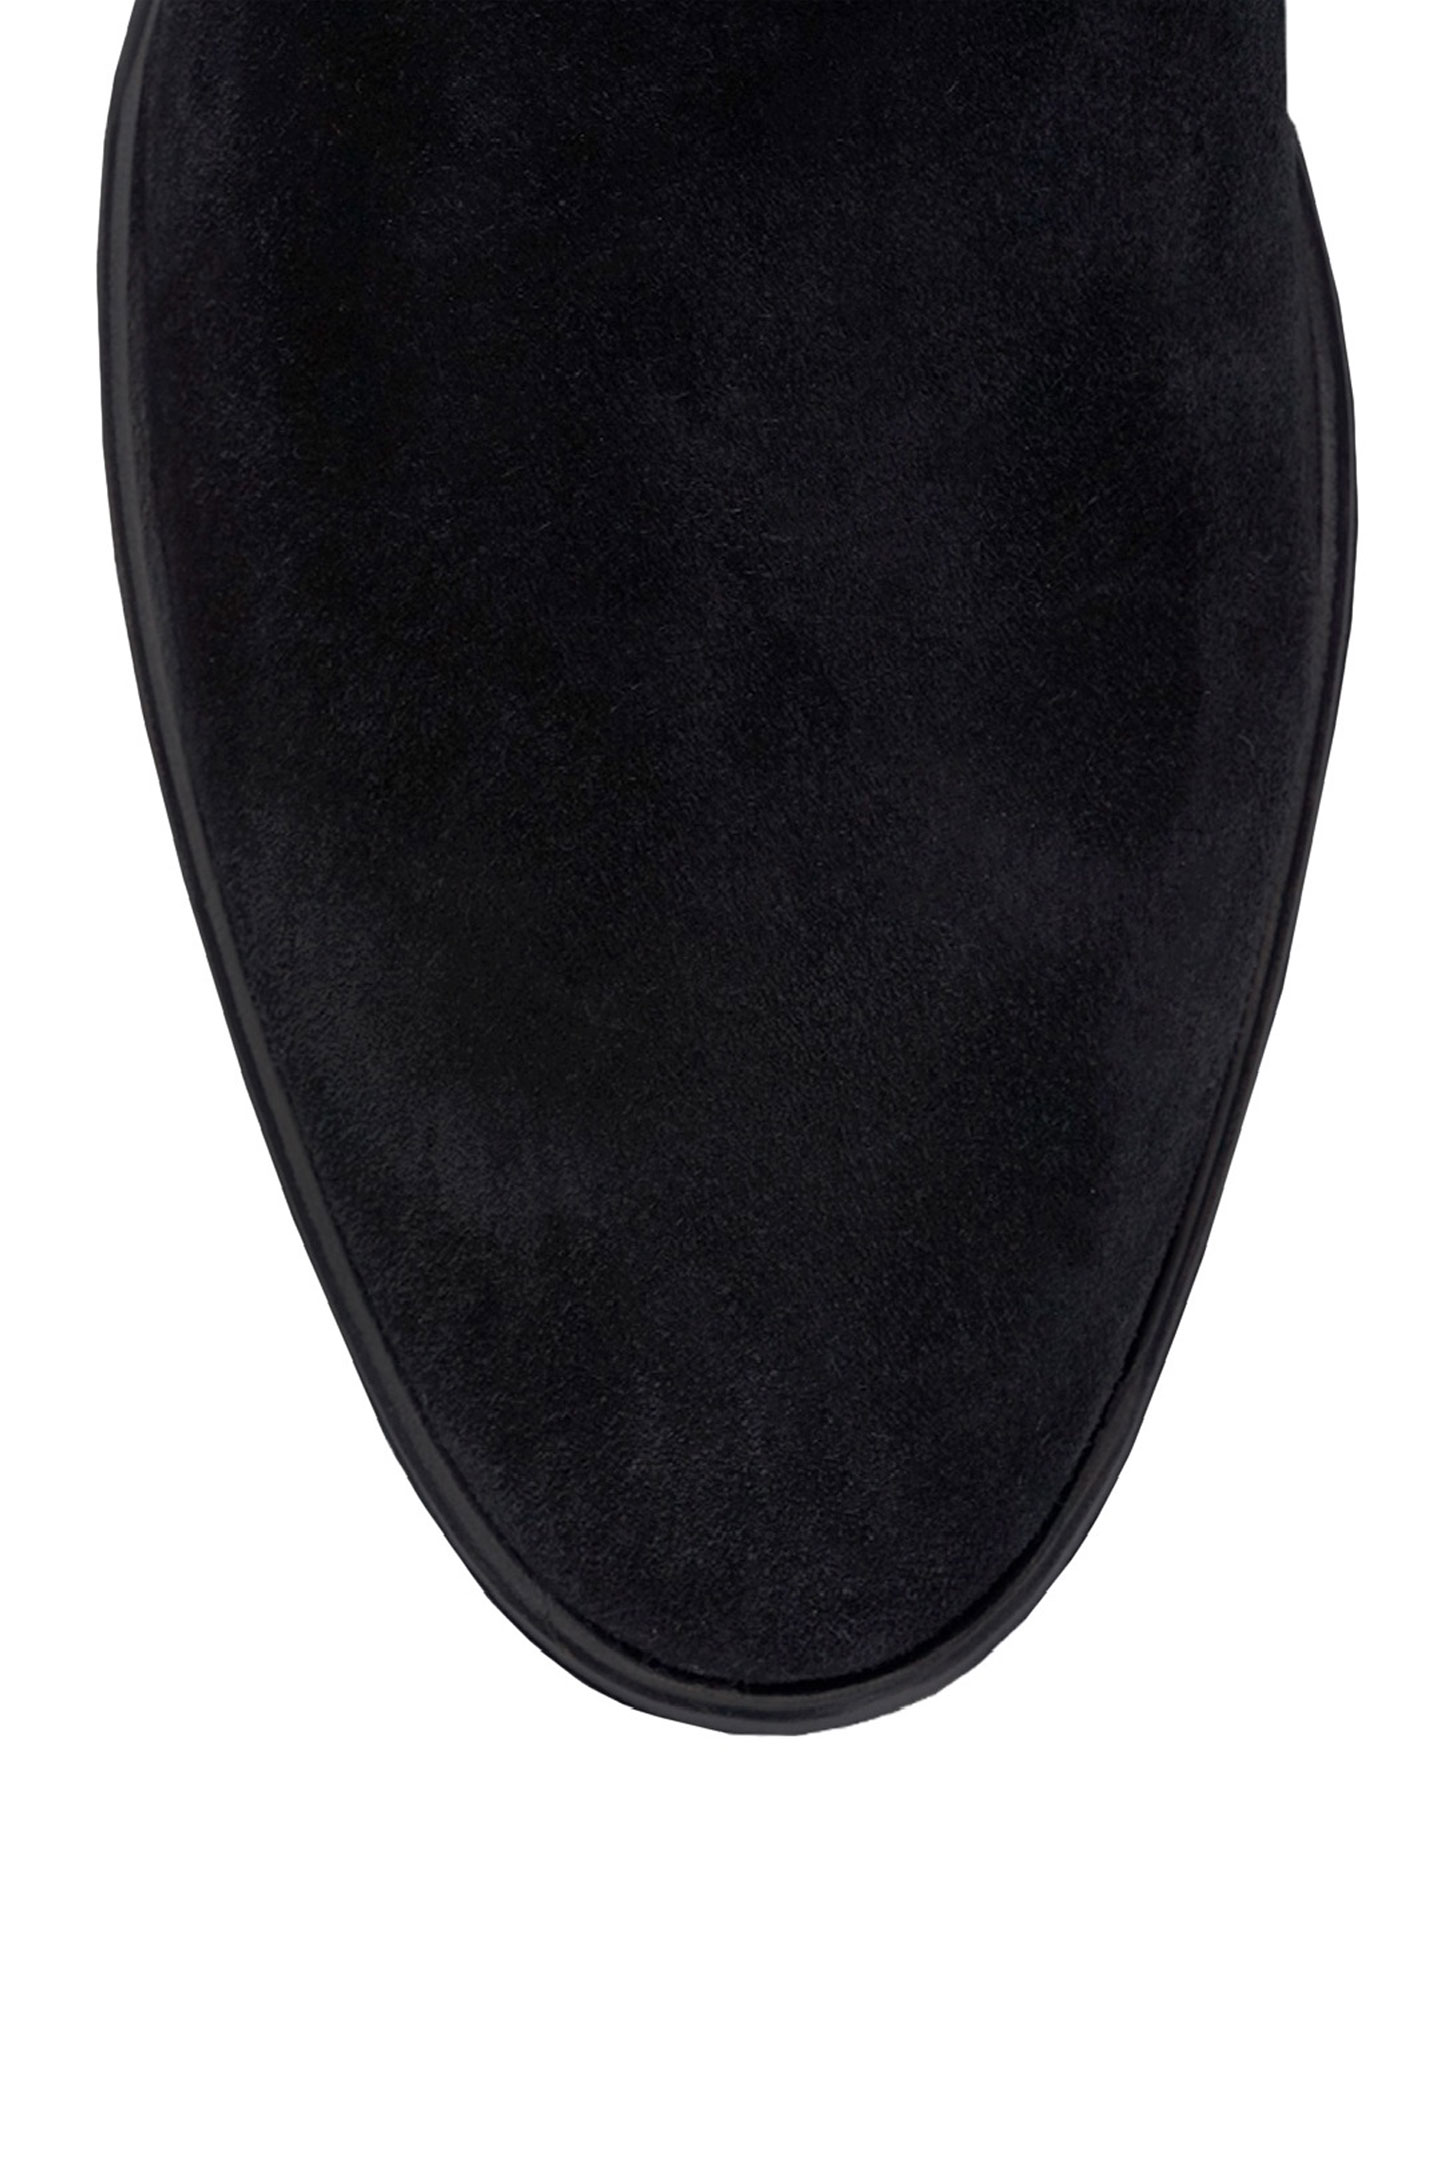 Ботинки DOLCE & GABBANA A60323 AA415, цвет: Черный, Мужской